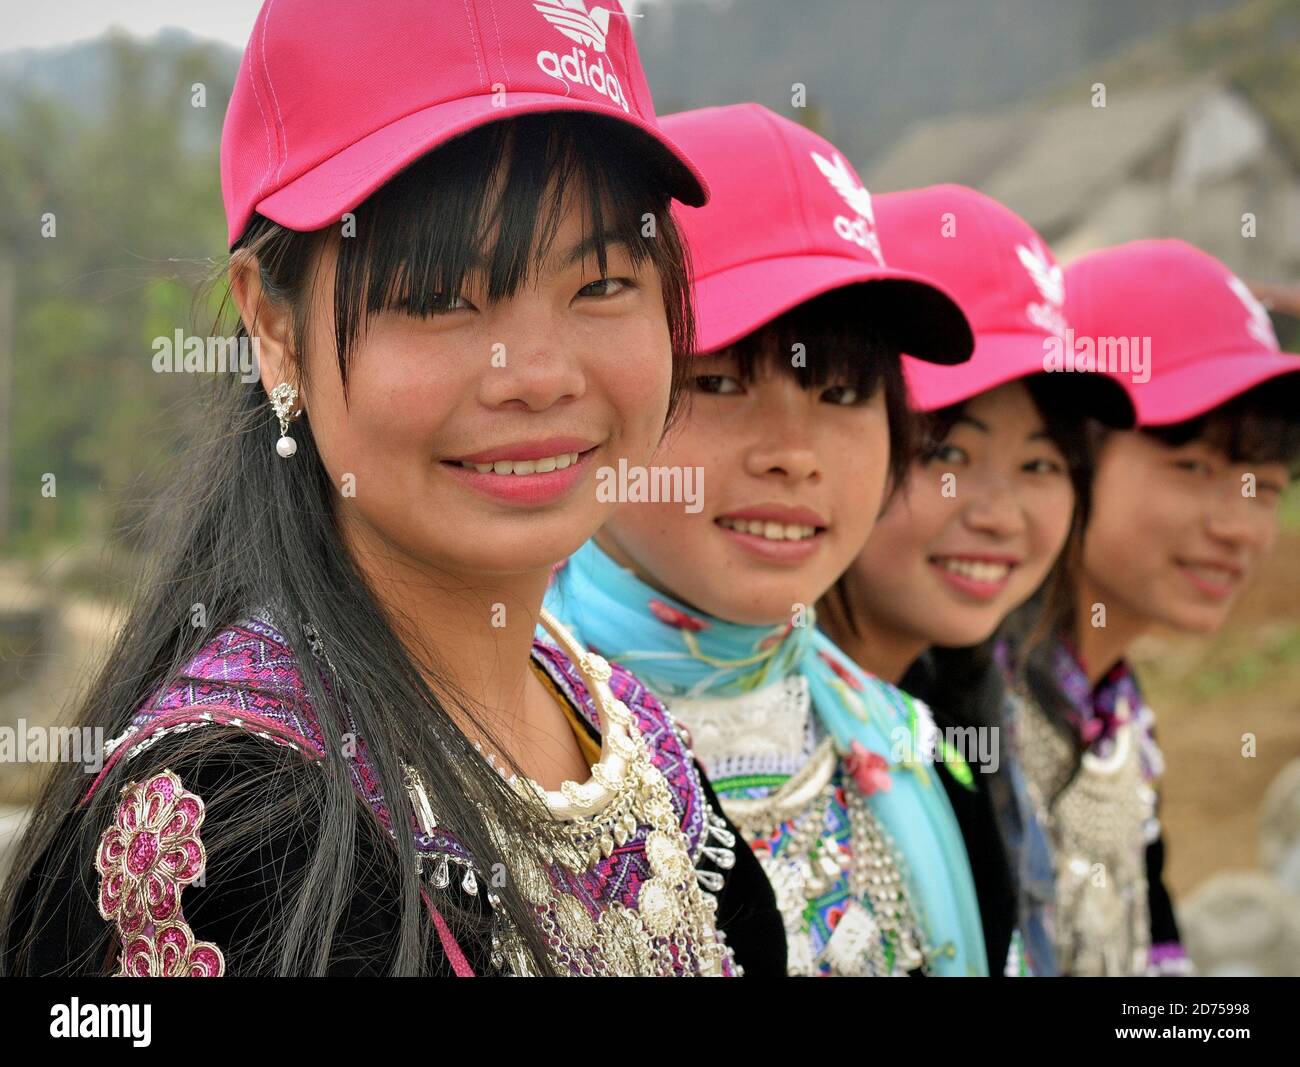 Quatre jeunes filles vietnamiennes Hmong Hill-Tribe sont assis dans une rangée, portent des casquettes de baseball roses modernes et une tenue tribale traditionnelle, se posent ensemble pour la caméra. Banque D'Images